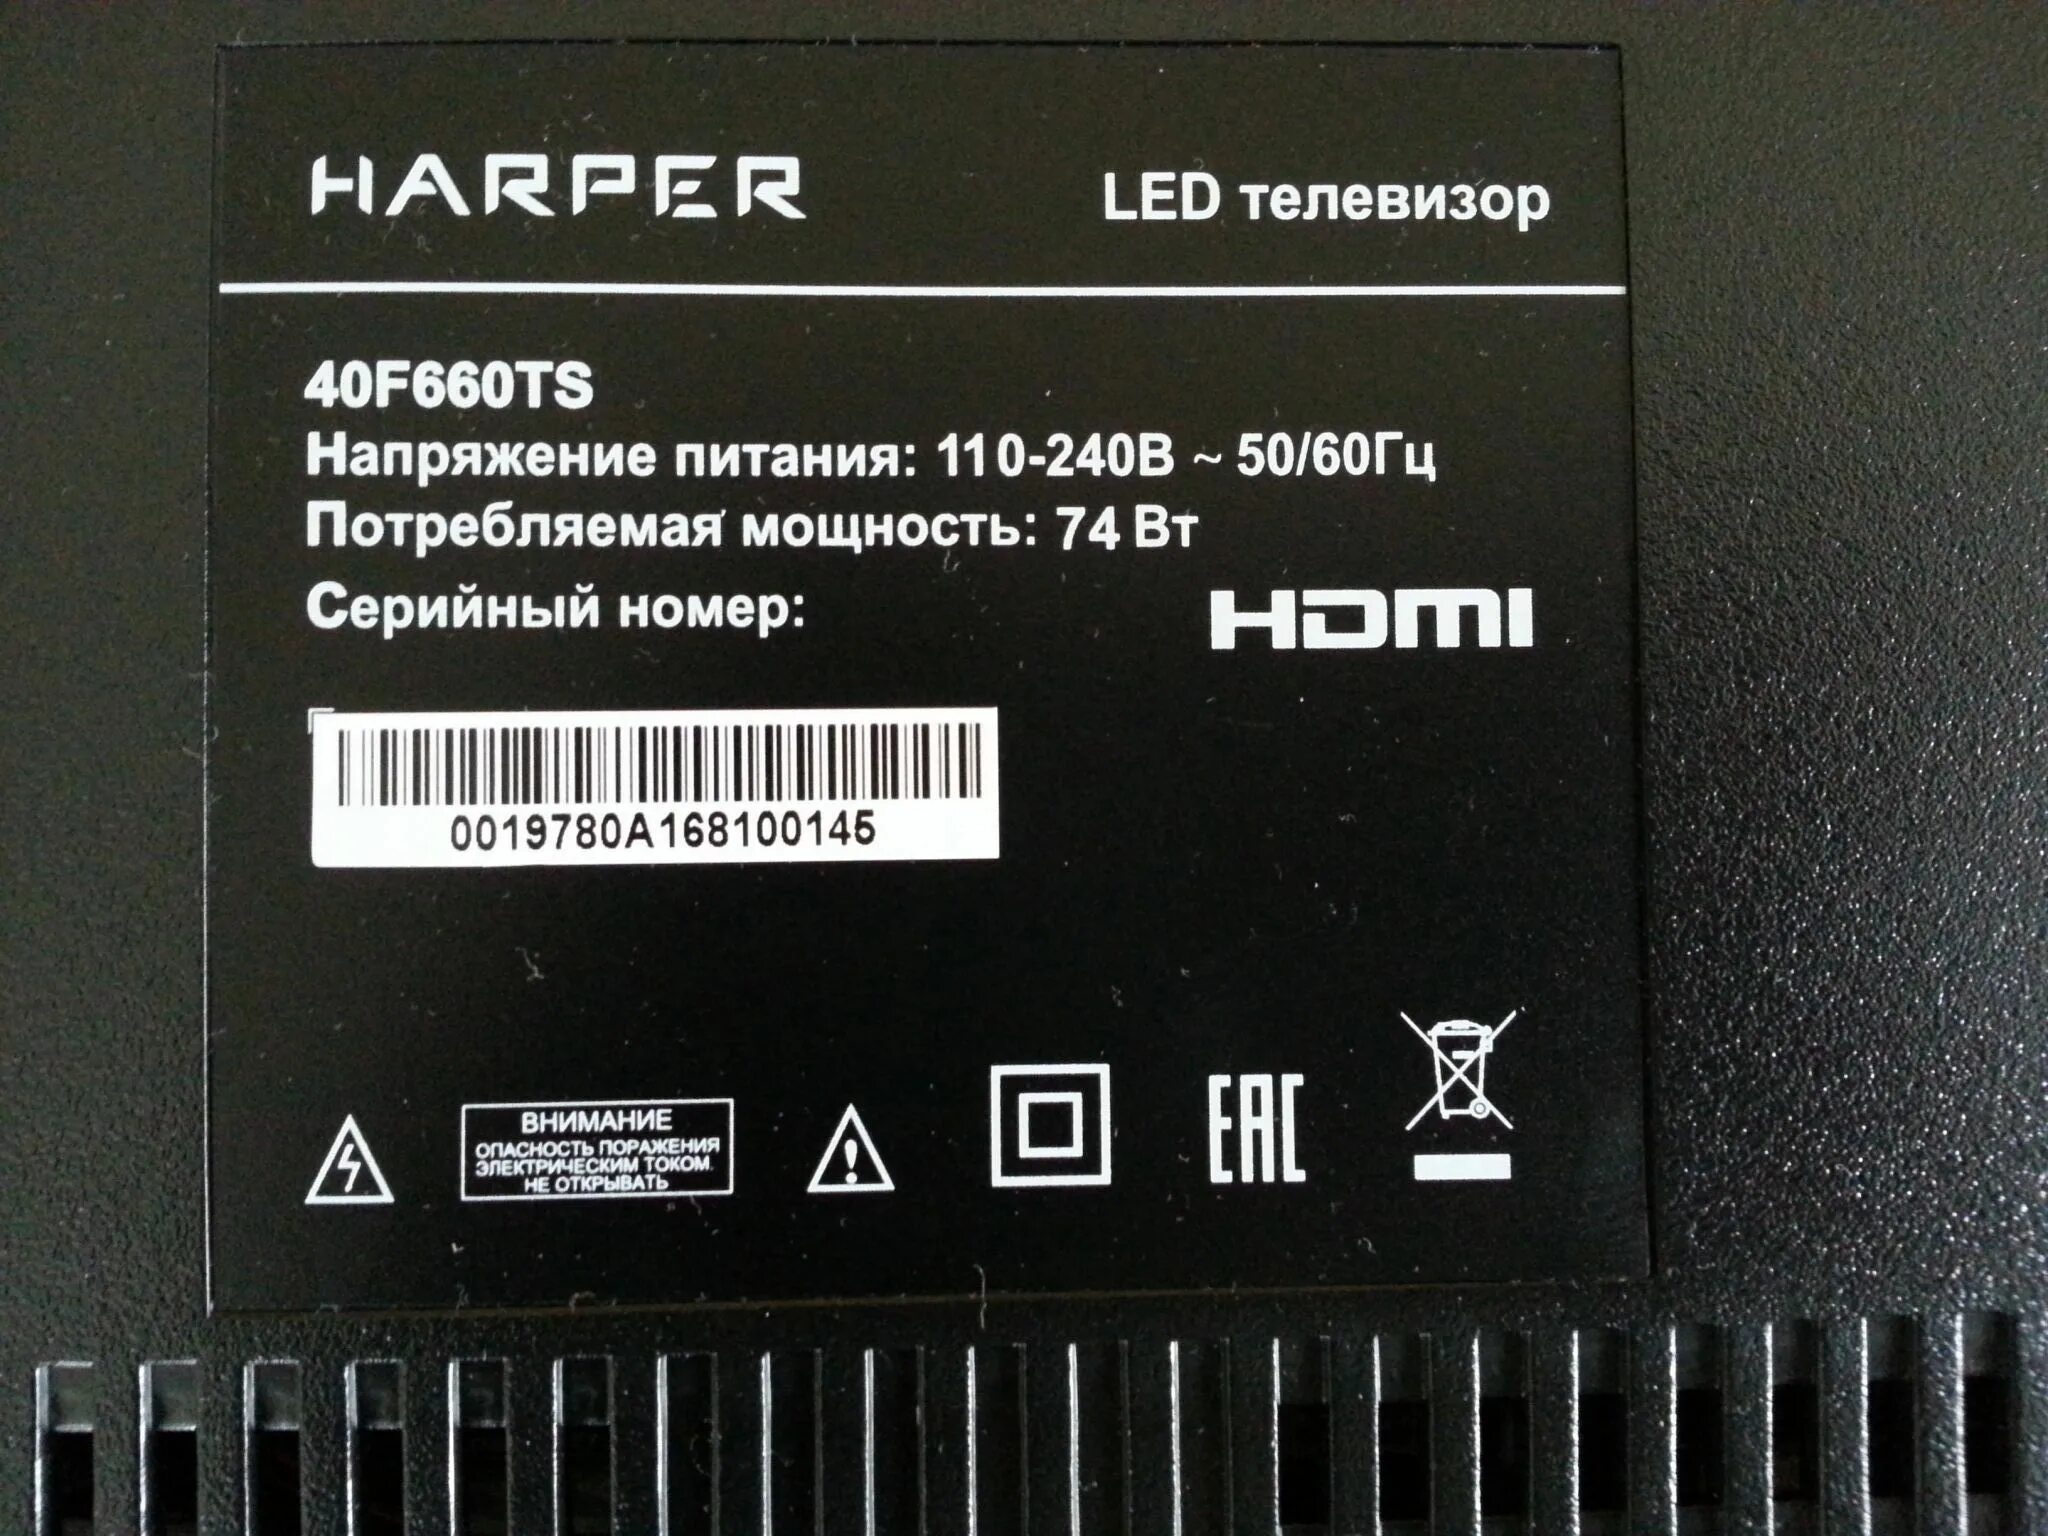 Harper 40f660ts. 42f660ts. Harper 40f820ts 40" черный. Код harper40f660ts.